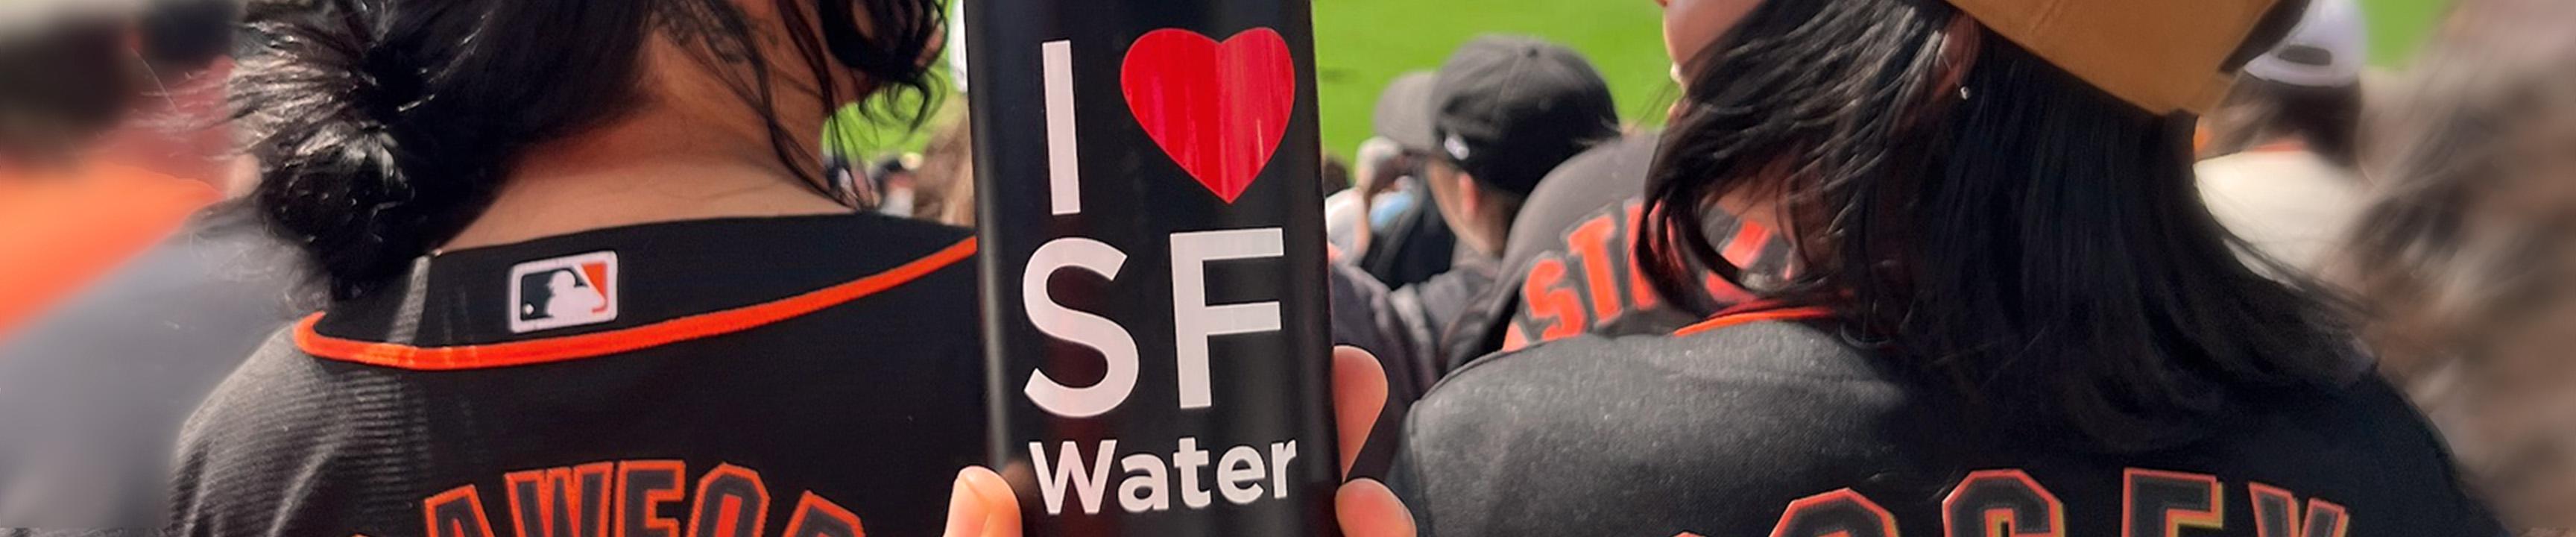 Поклонники наслаждаются игрой Giants и бутылкой воды с I heart SF Water